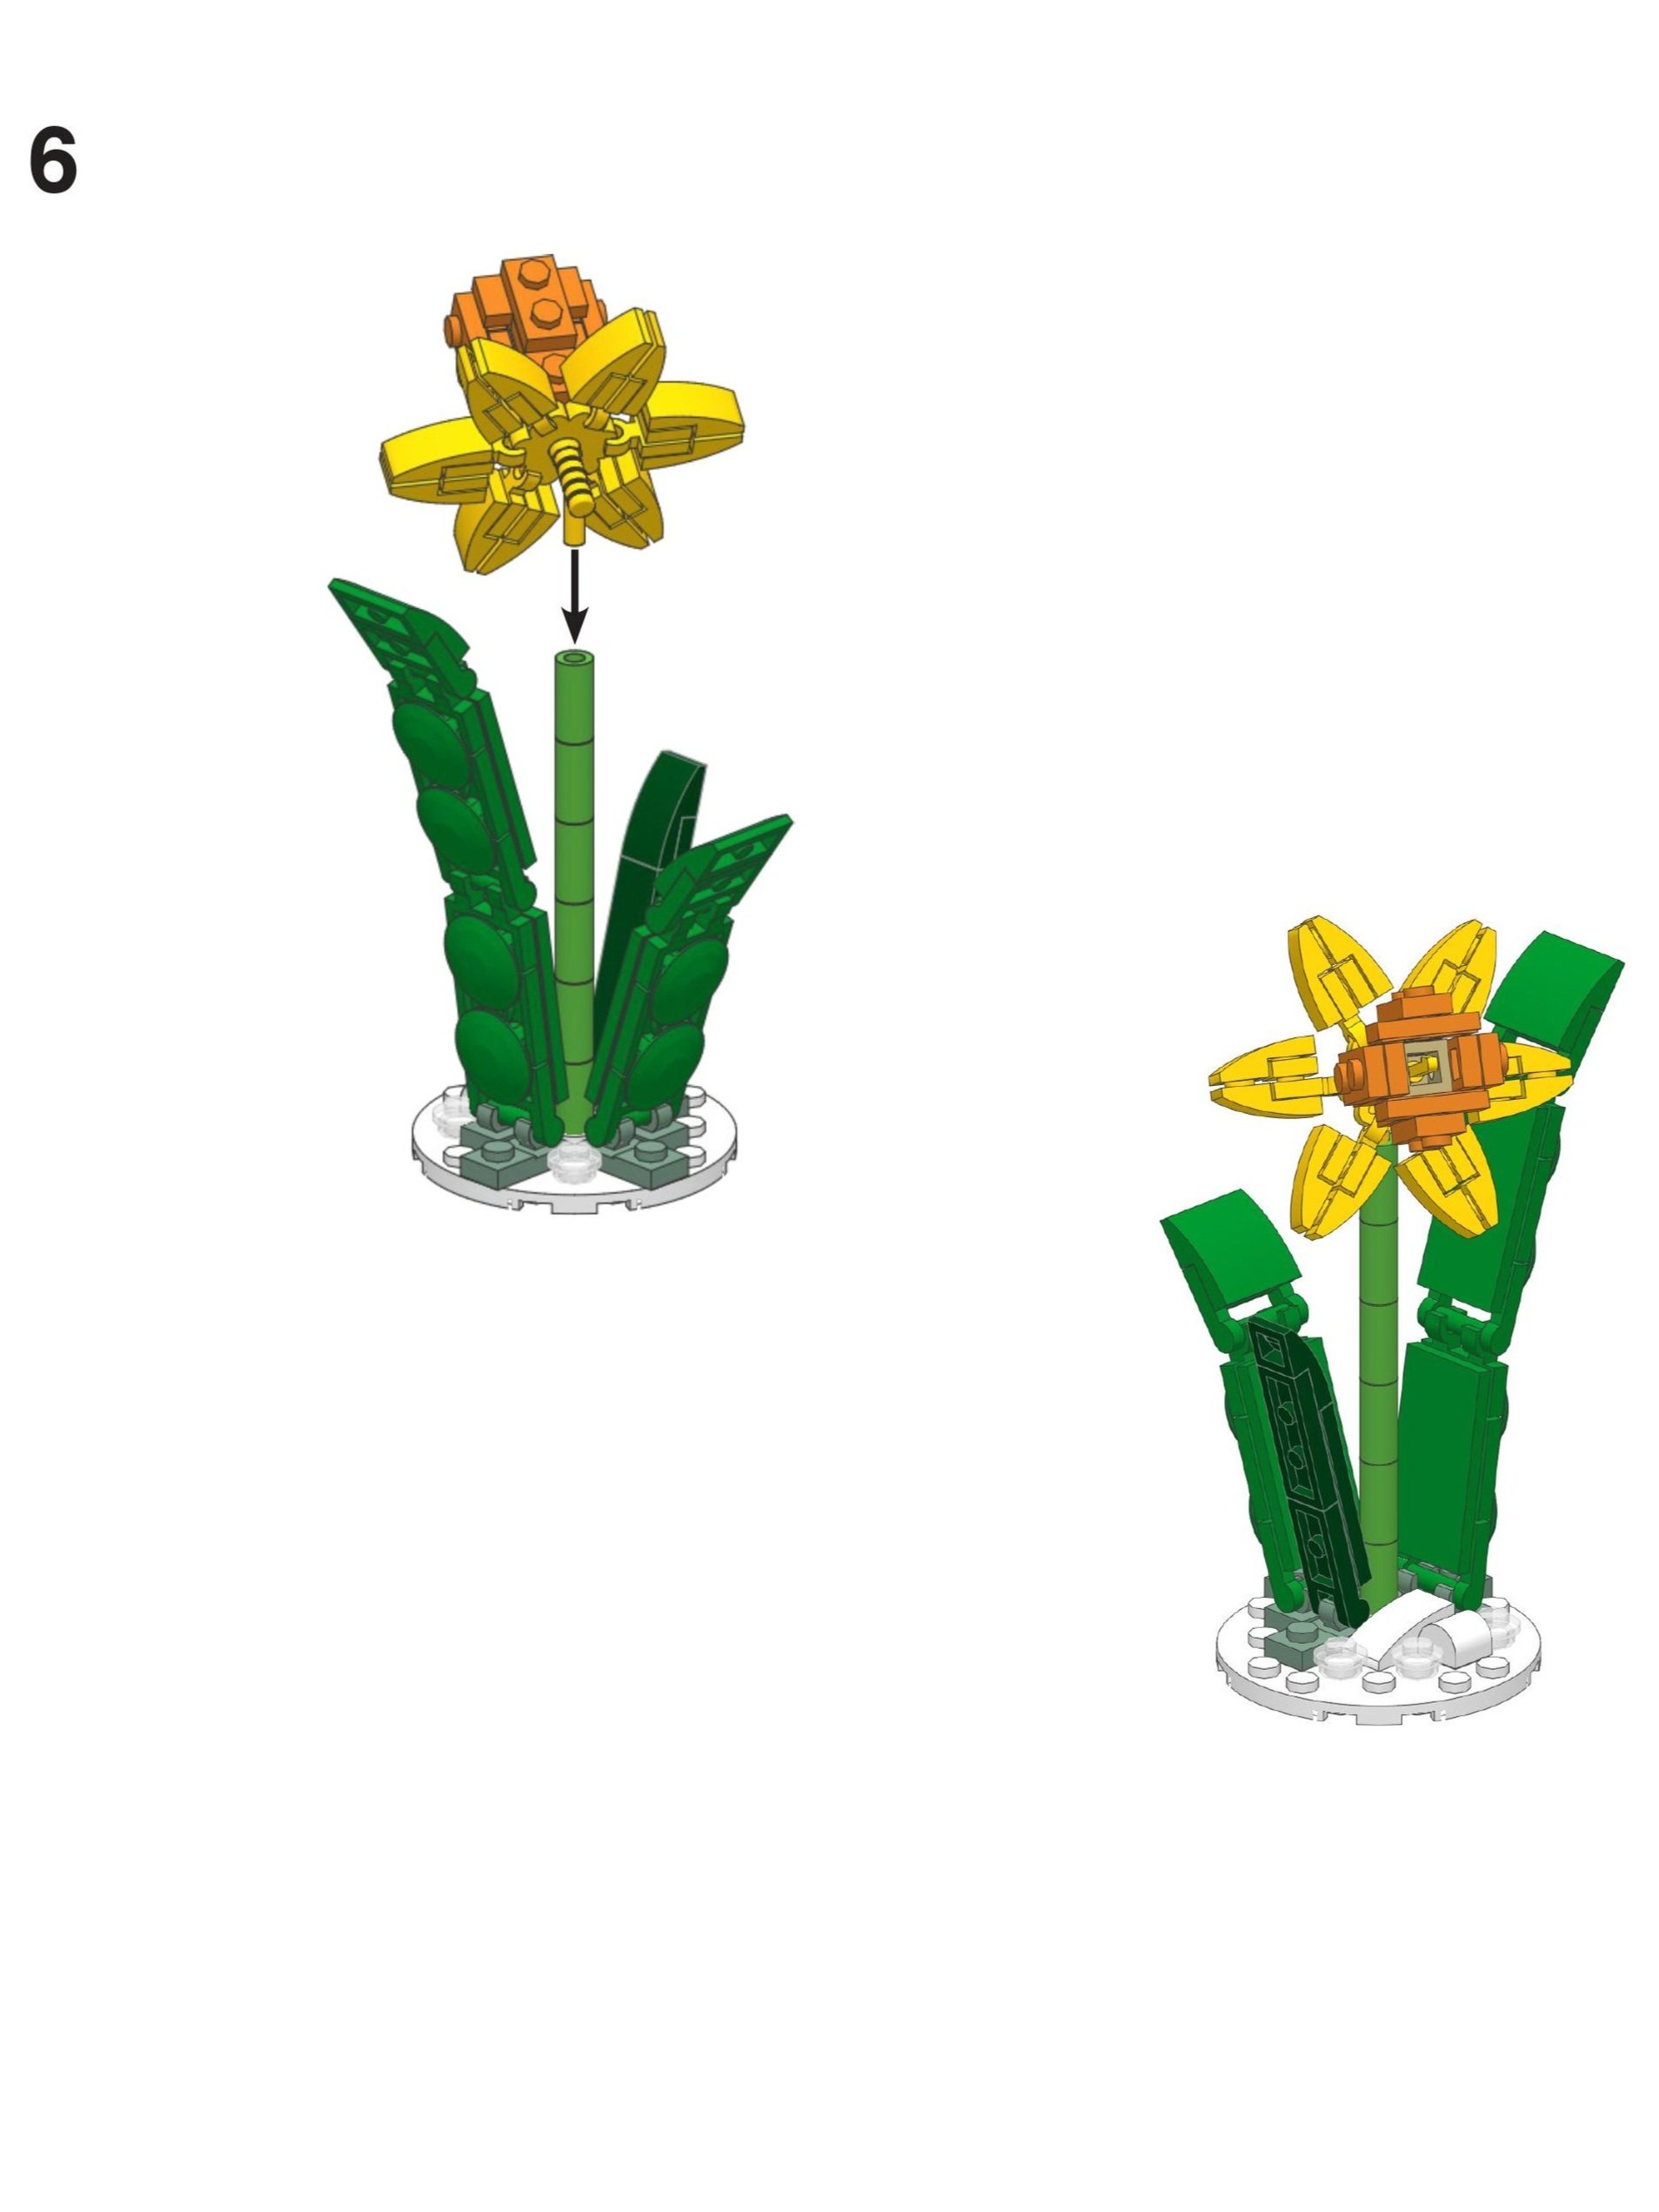 LEGO+Daffodil+Instructions+4+-+BrickNerd.jpg